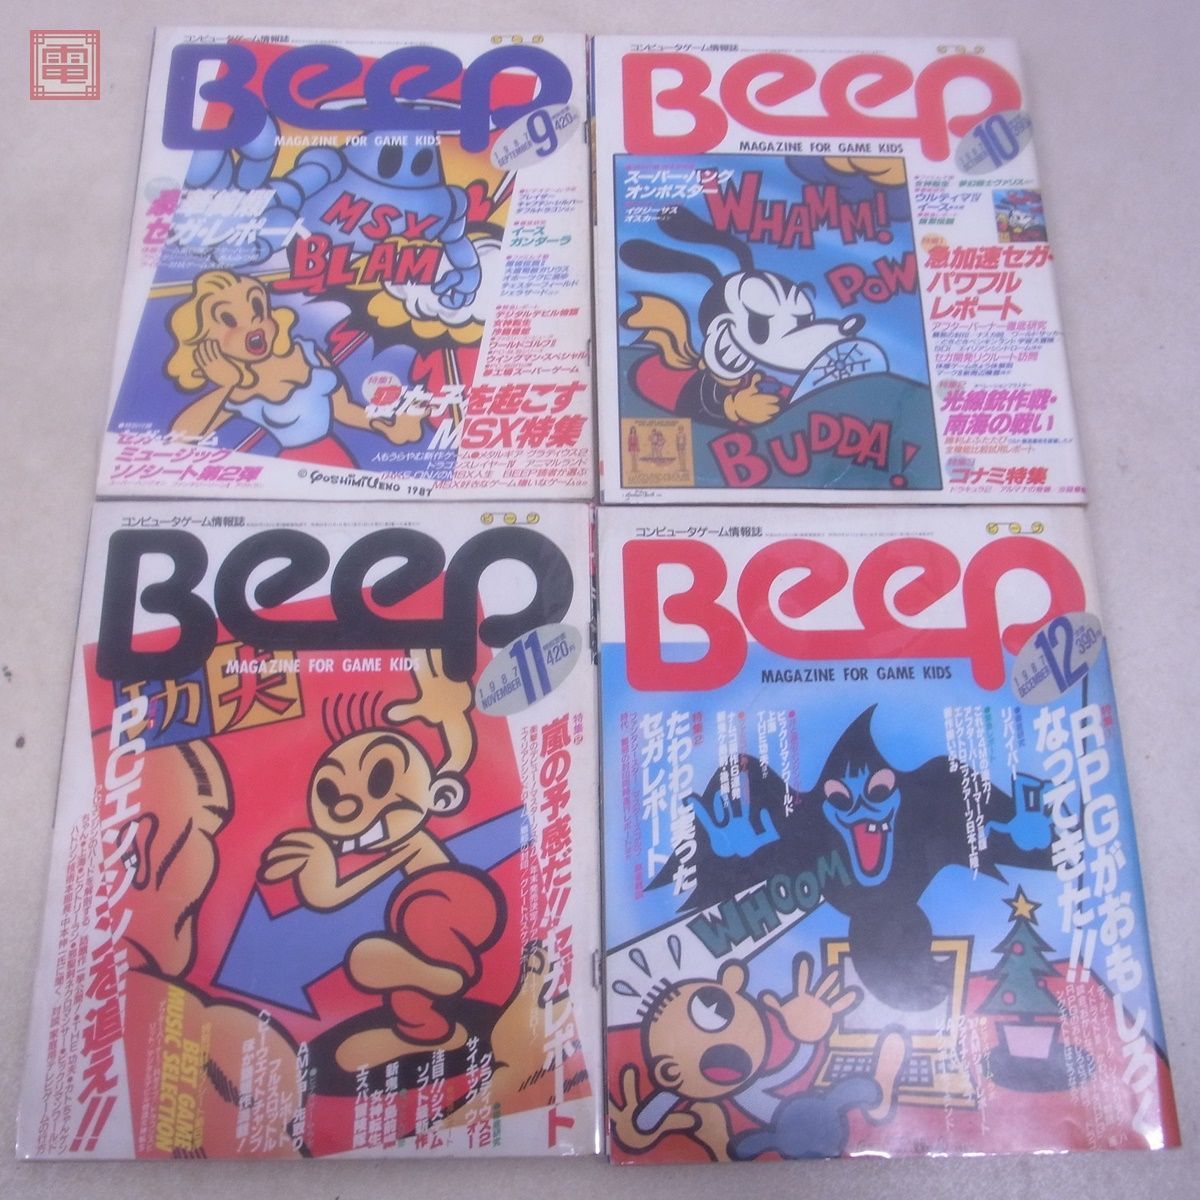  журнал компьютер игра информация журнал ежемесячный Beep 1987 год 1 месяц номер ~12 месяц номер через год .. открытка +sono сиденье есть итого 12 шт. комплект Be p Япония SoftBank [20